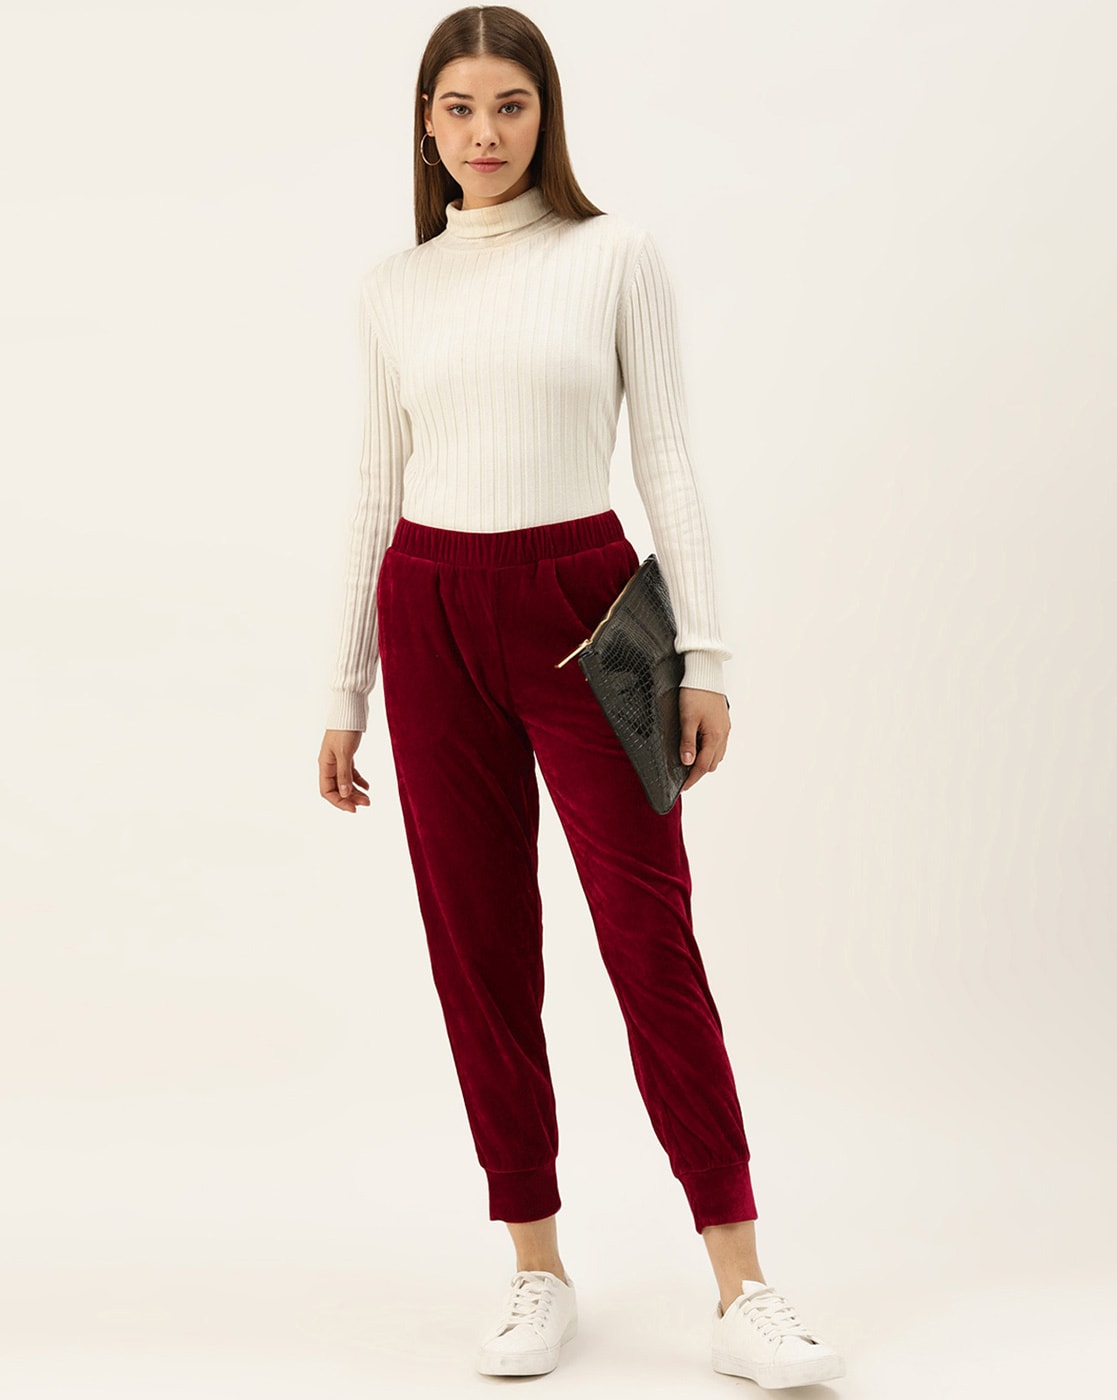 Buy Women Burgundy Bell Bottom Knitted Pants Online at Sassafras